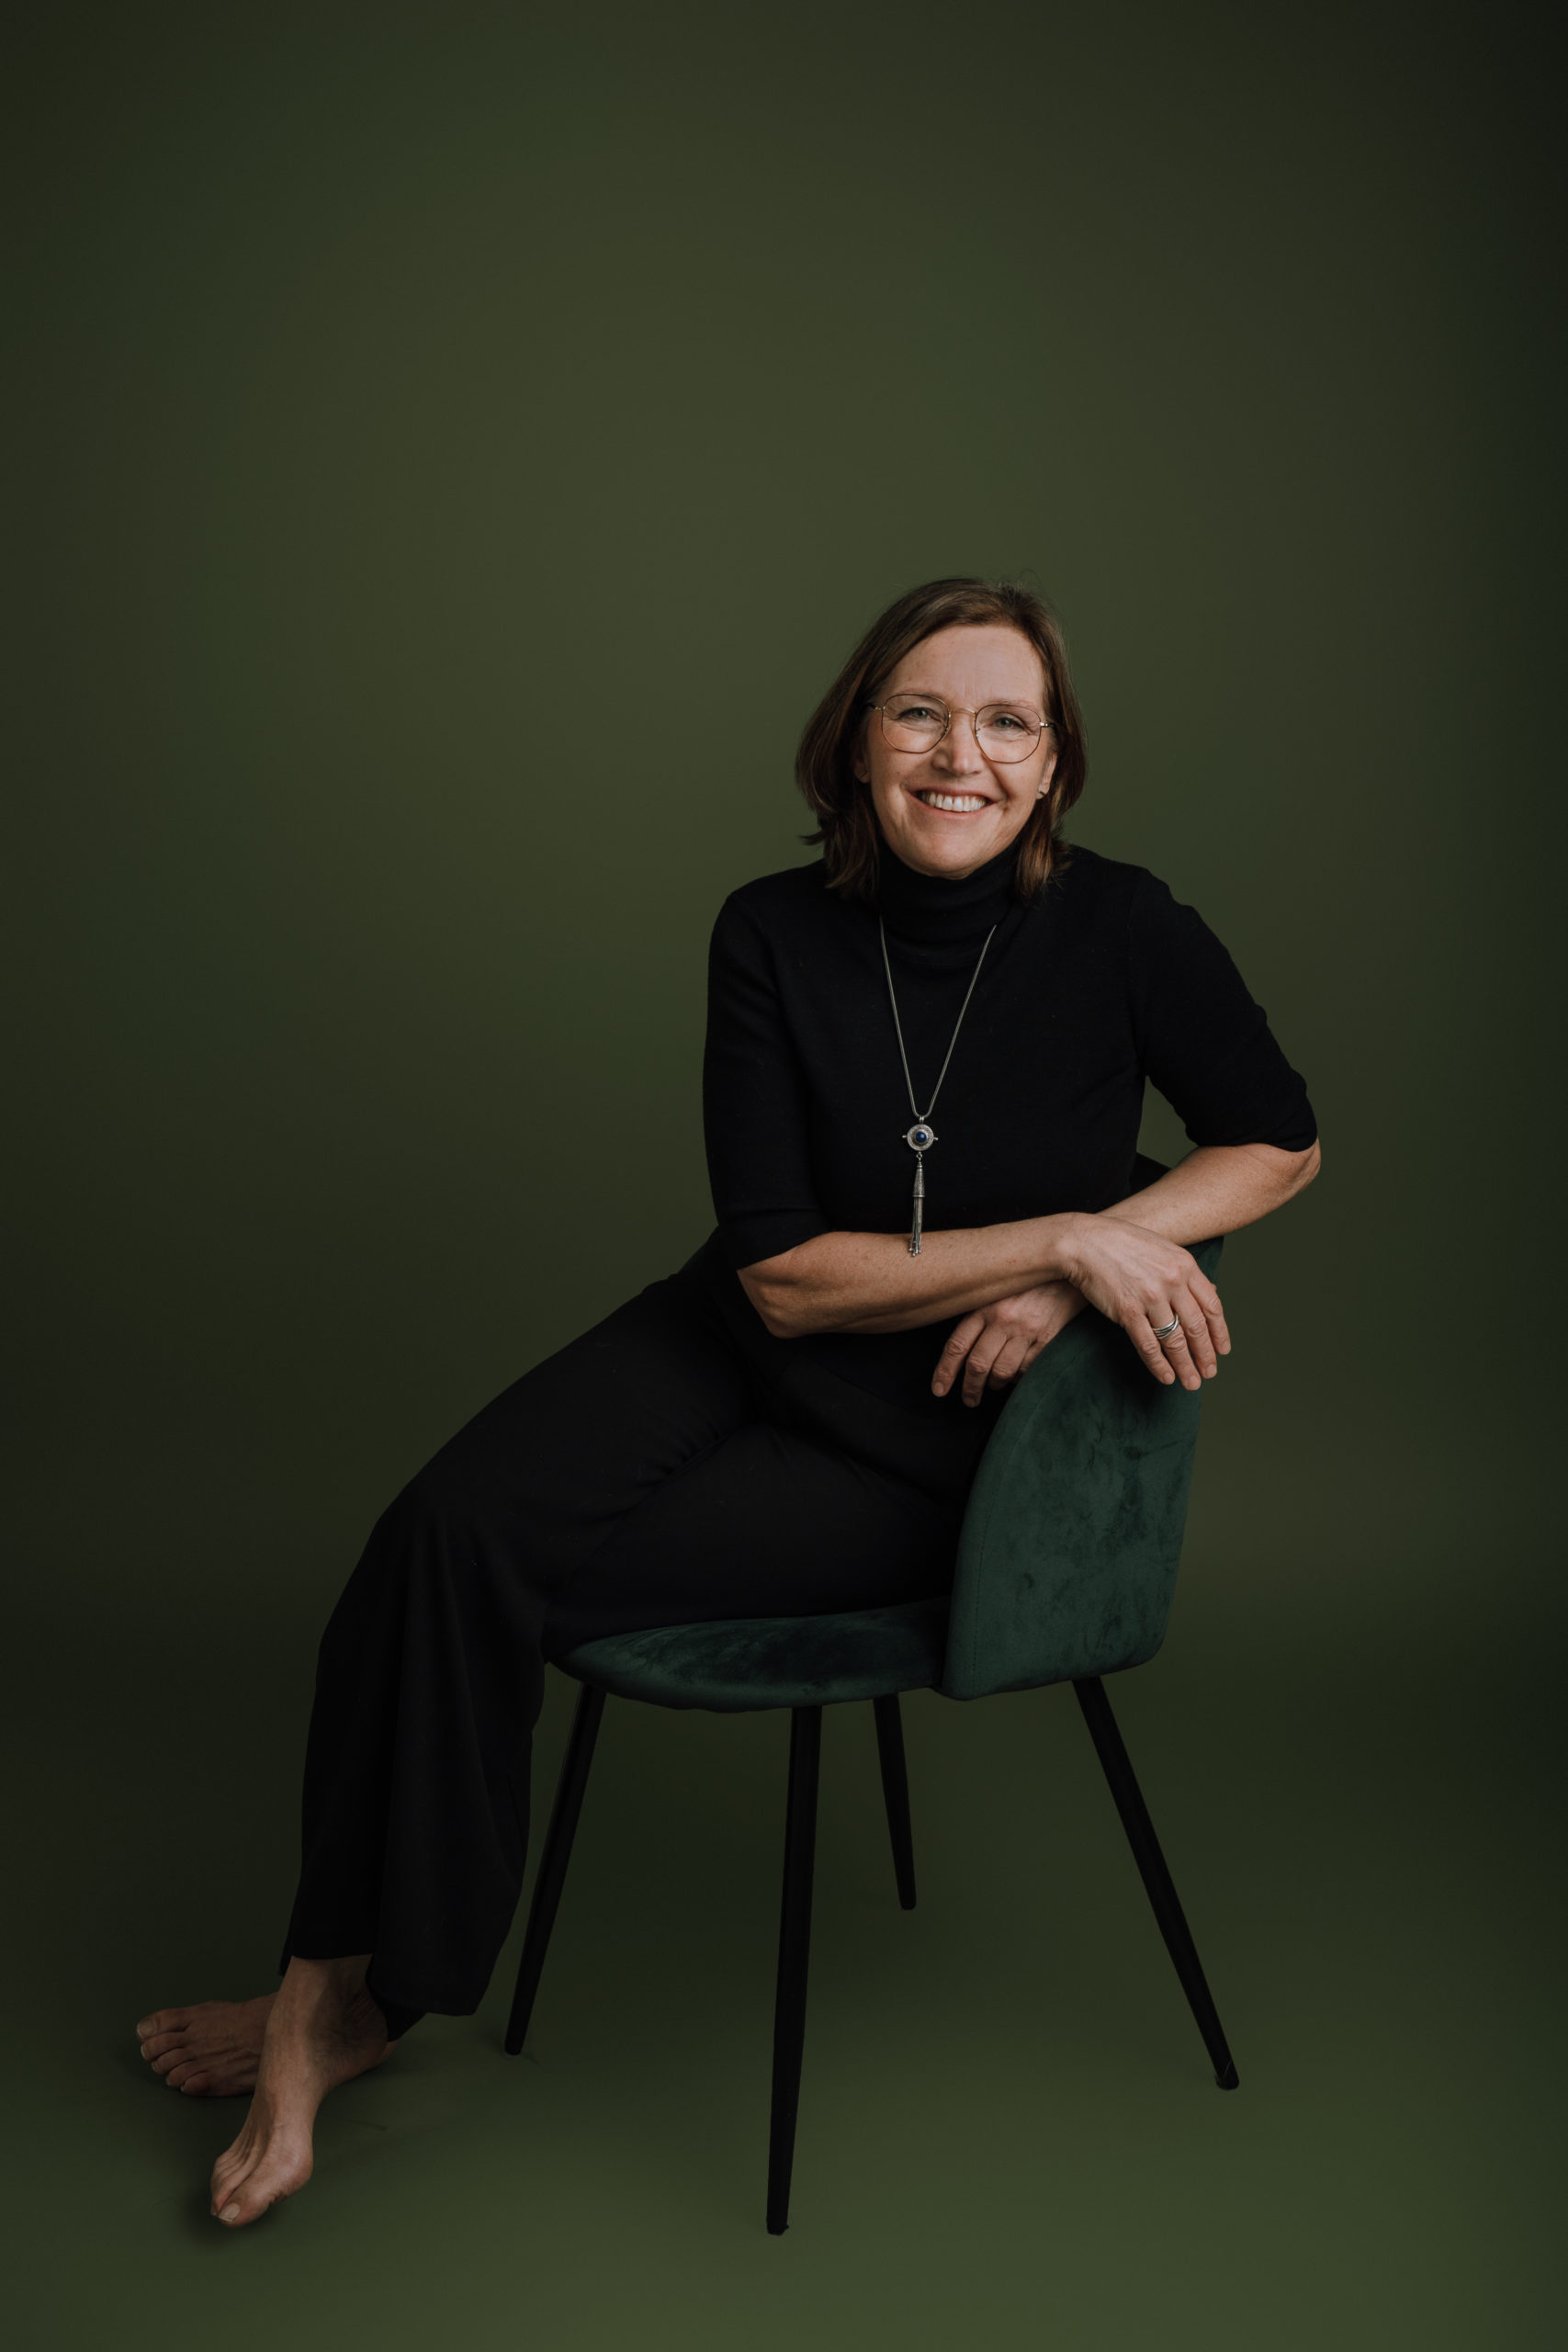 Dette er et bilde av vetrinær Helen Øvregaard. Hun sitte på en grønn stol på en grønn bakgrunn. Hun har beina i kors, lener seg til armlenet og smiler til kamera.